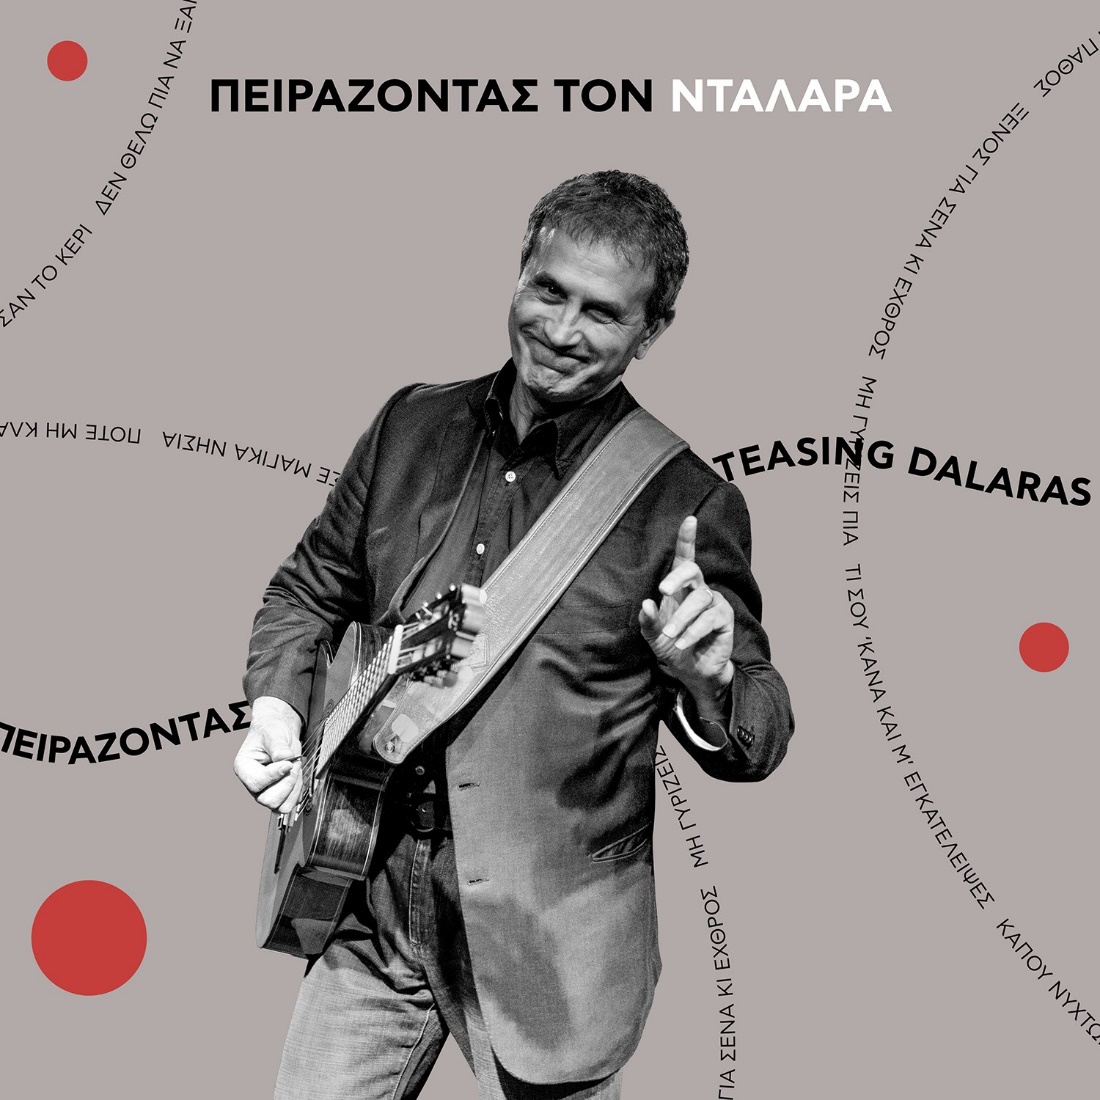 Ο Γιώργος Νταλάρας κυκλοφορεί το νέο του album με 10 τραγούδια